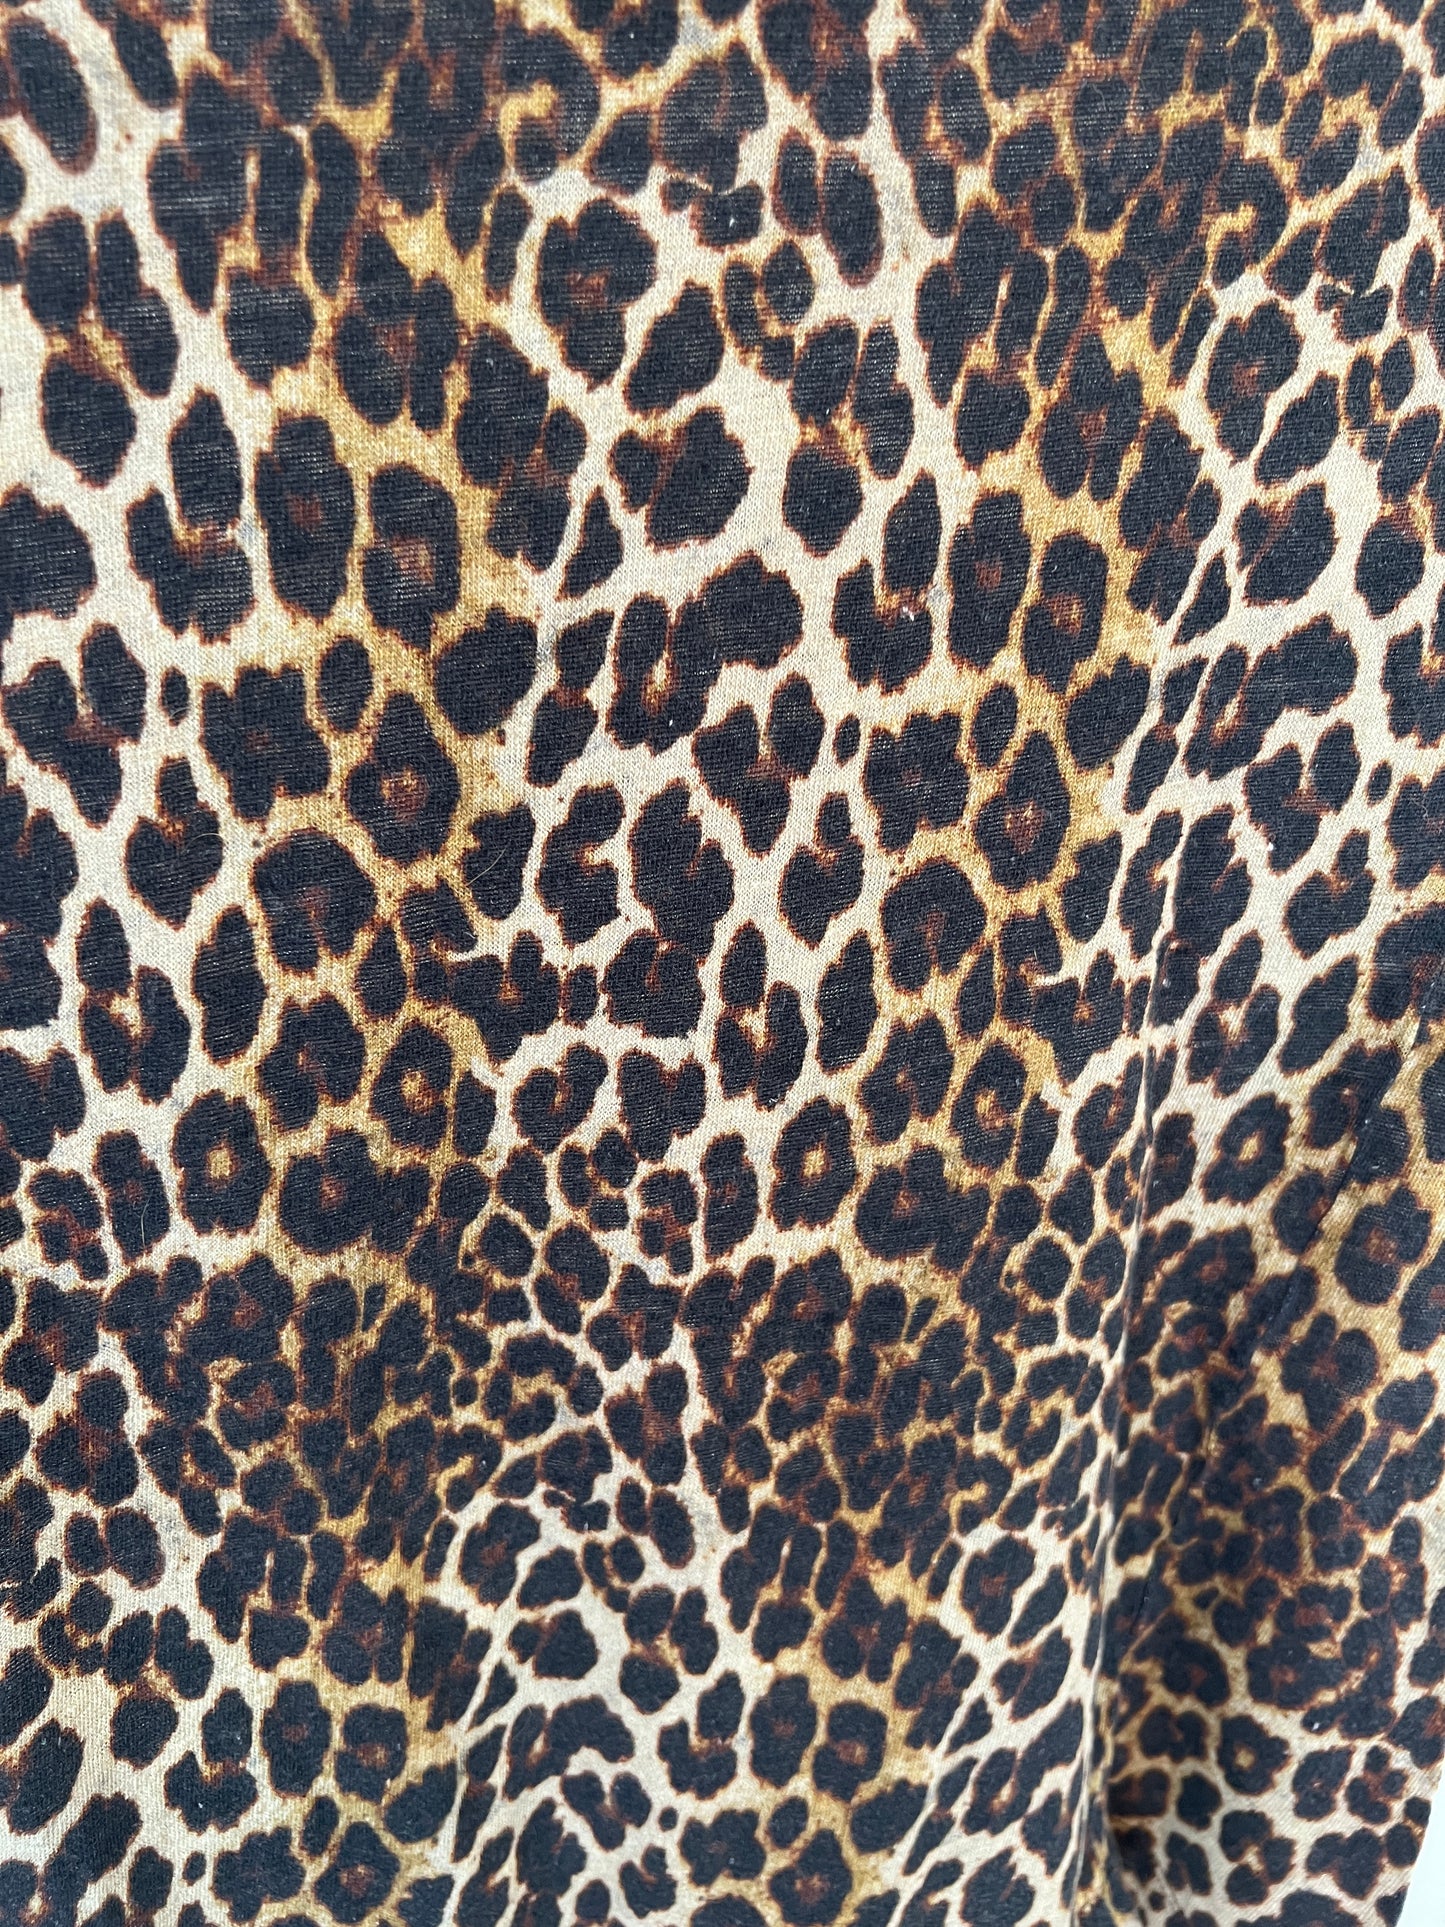 Leopard Print T-shirt - XS